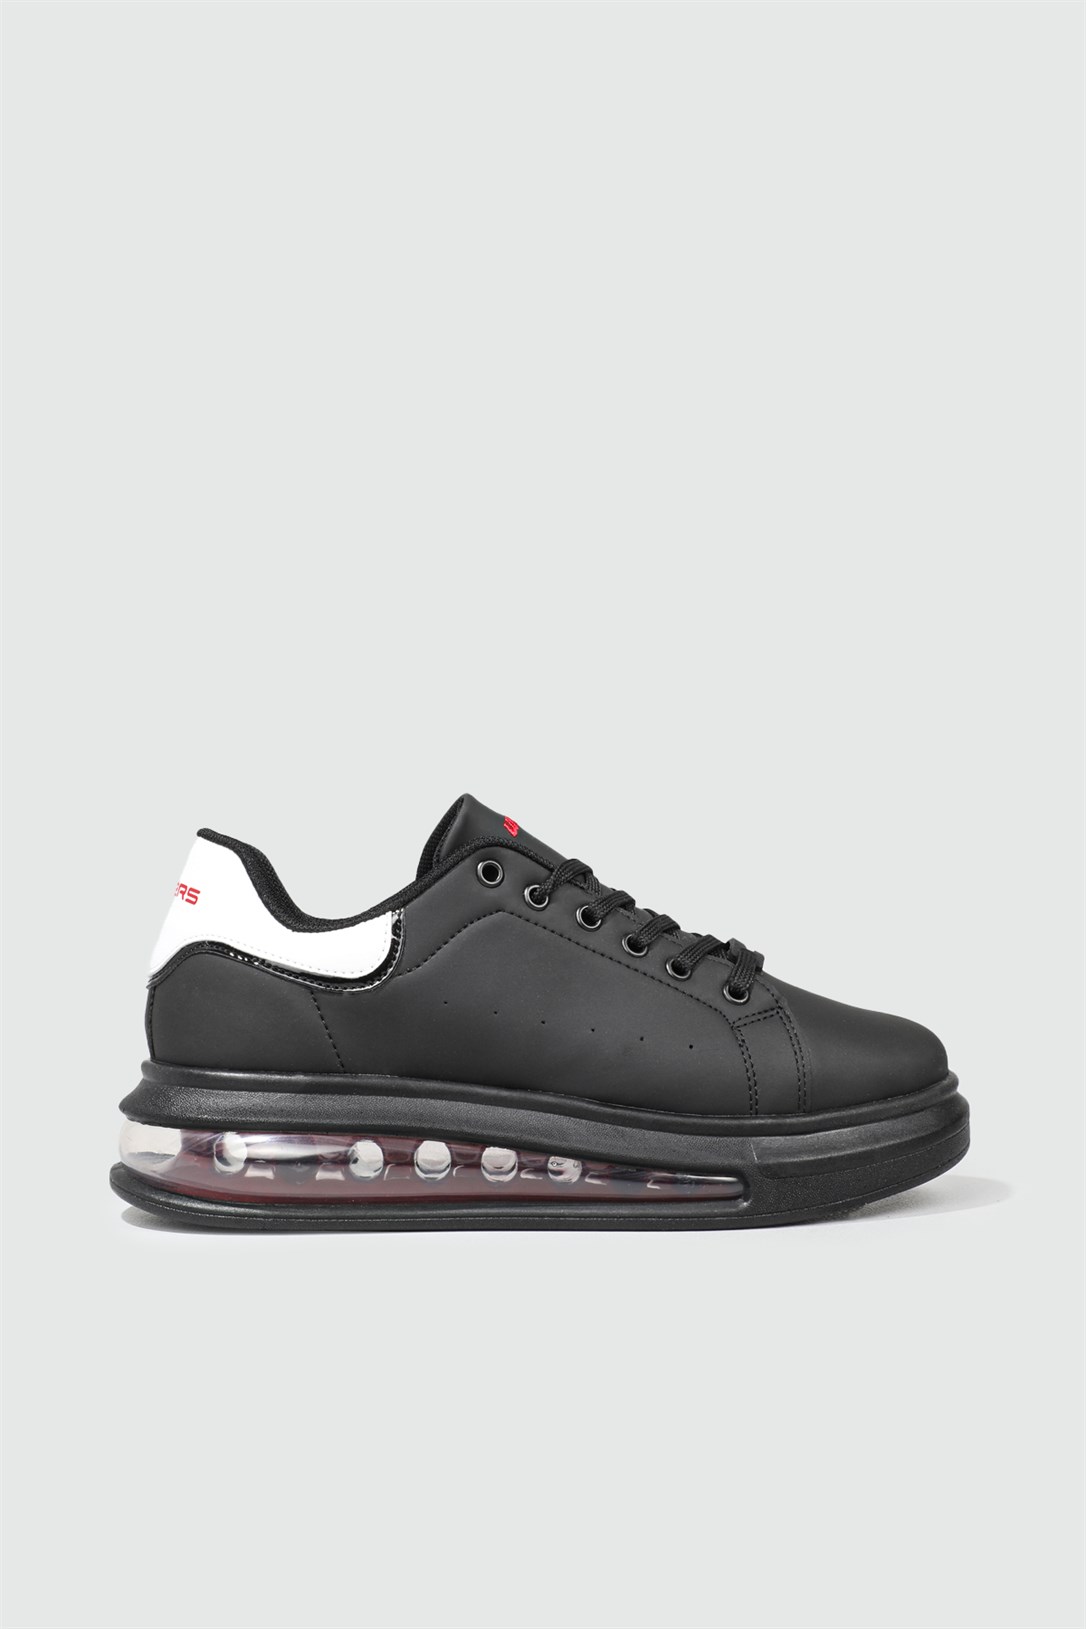 Wickers Air Taban Günlük Rahat Sneaker Siyah Kırmızı Erkek Spor Ayakkabı  2488